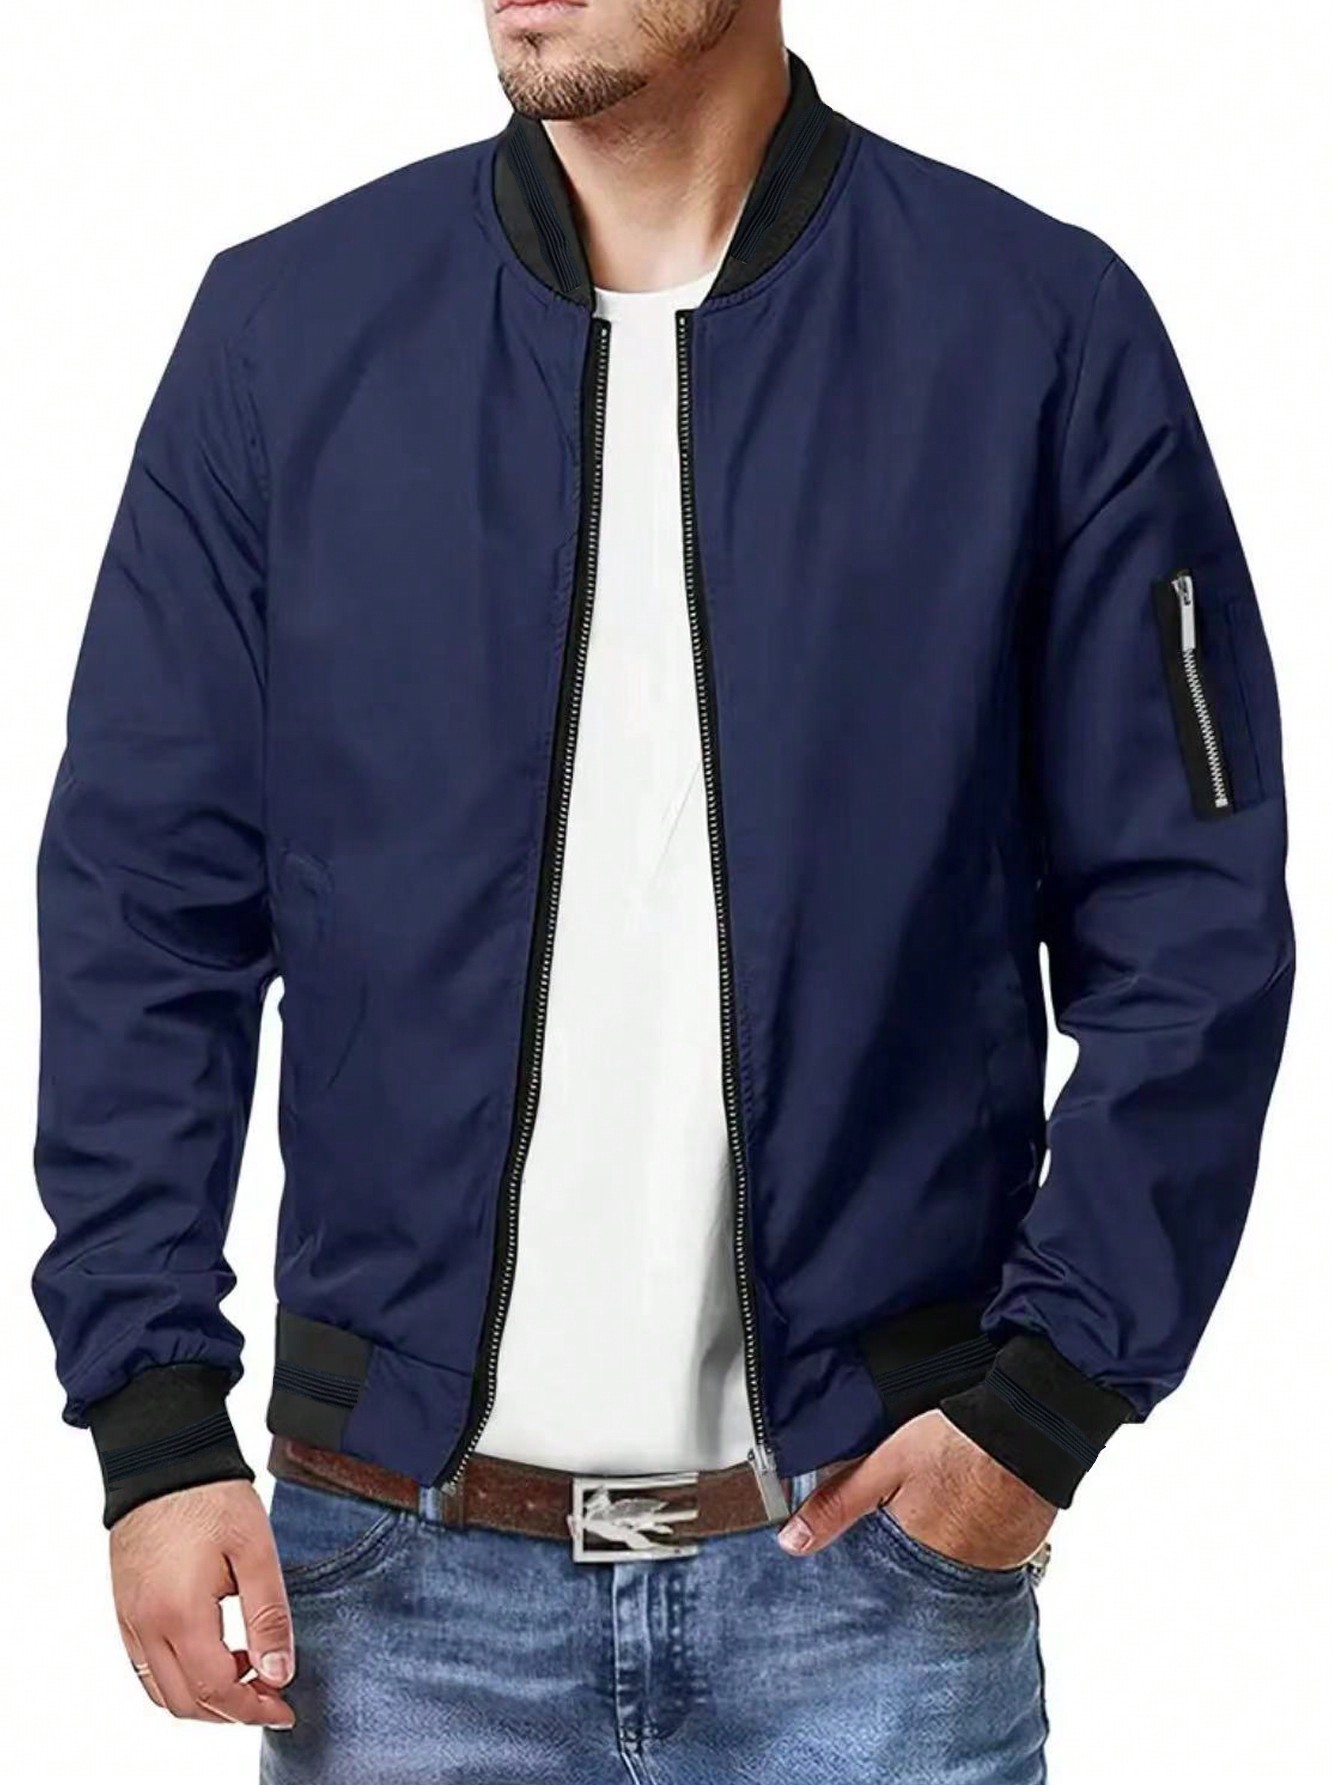 Мужская повседневная спортивная куртка на молнии с воротником-стойкой, темно-синий куртка мужская демисезонная с воротником стойкой универсальная повседневная тонкая куртка свободного покроя корейская версия